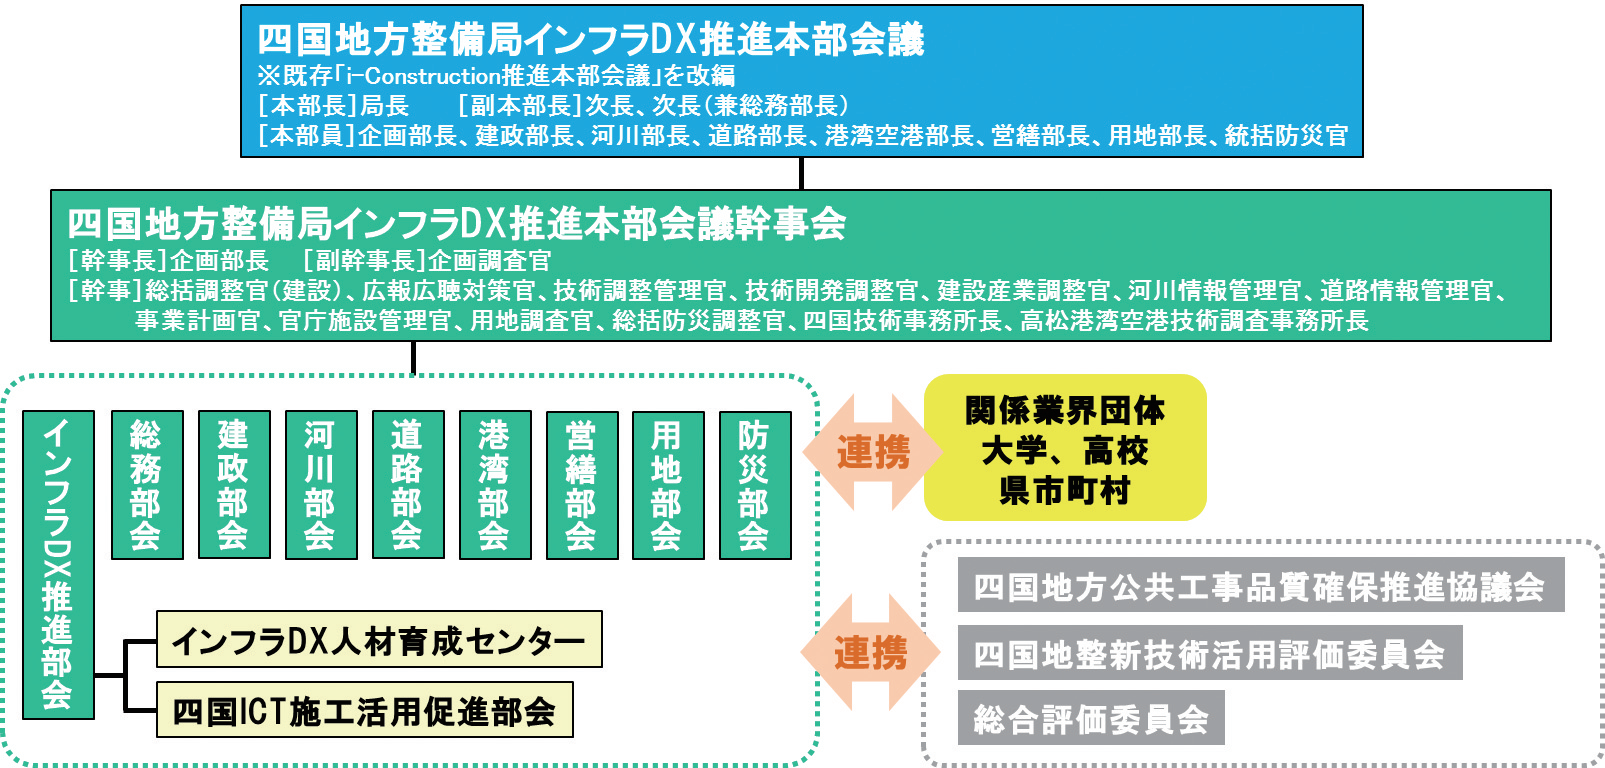 四国地方整備局におけるインフラDX推進体制